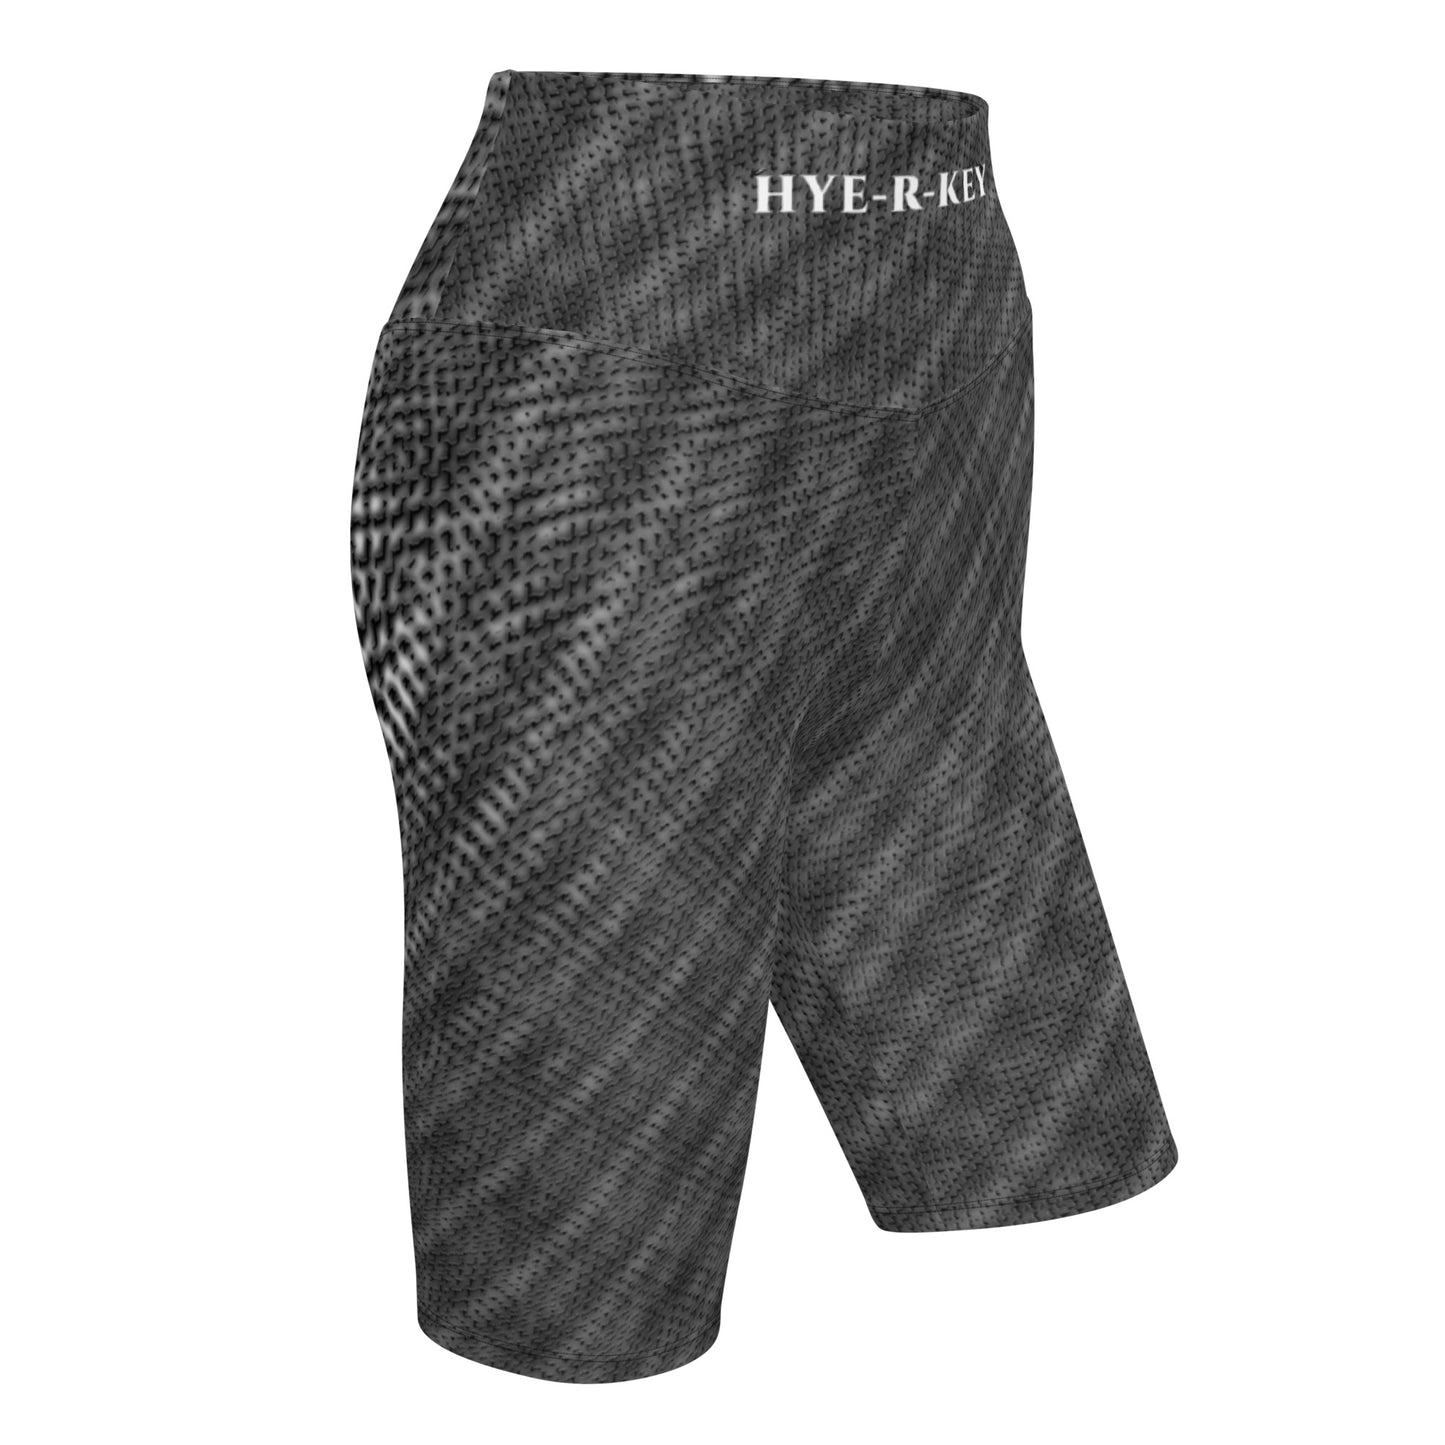 2-Hye: Hye-R-Key Shorts